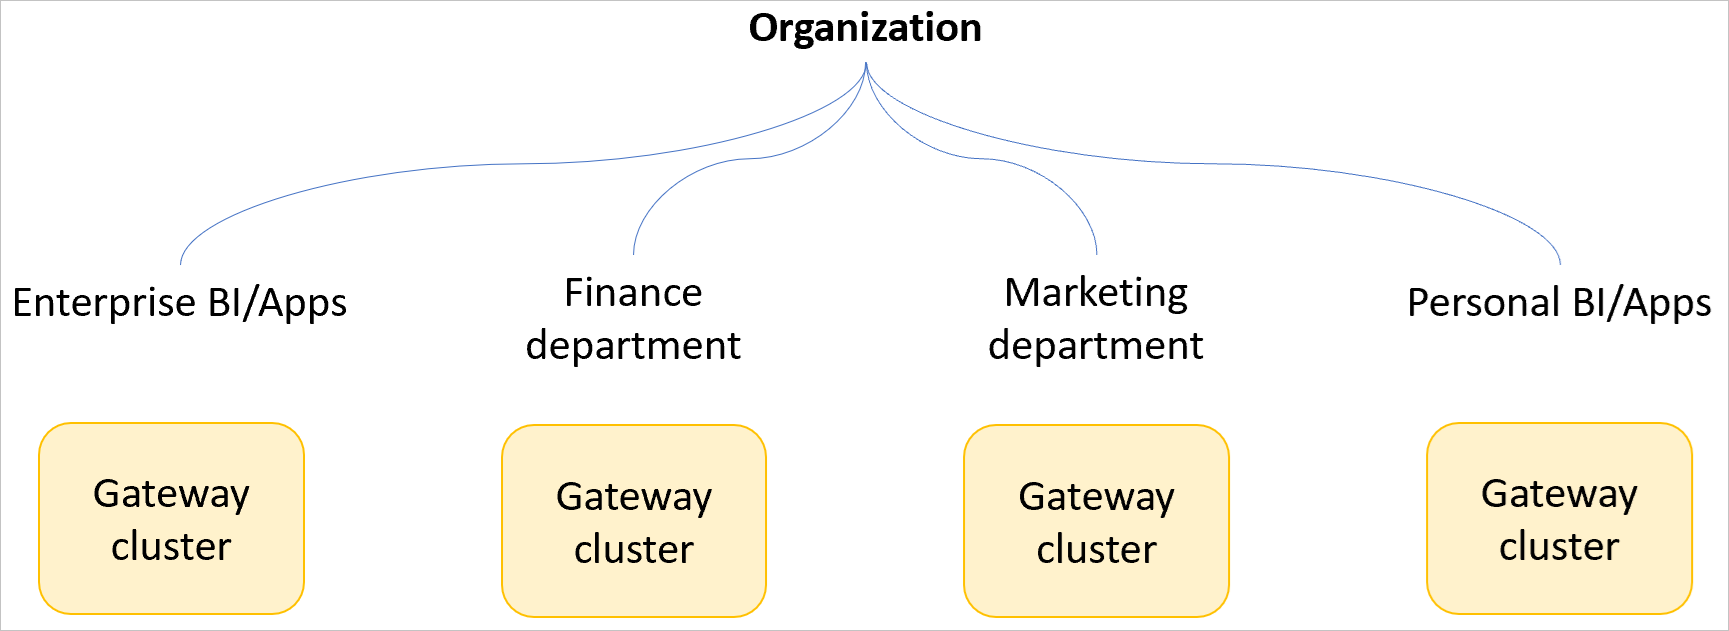 Εικόνα ενός παραδείγματος οργανισμού με ξεχωριστά συμπλέγματα πυλών για επιχειρησιακό BI και εφαρμογές, το οικονομικό τμήμα, το τμήμα μάρκετινγκ και προσωπικό BI και εφαρμογές.